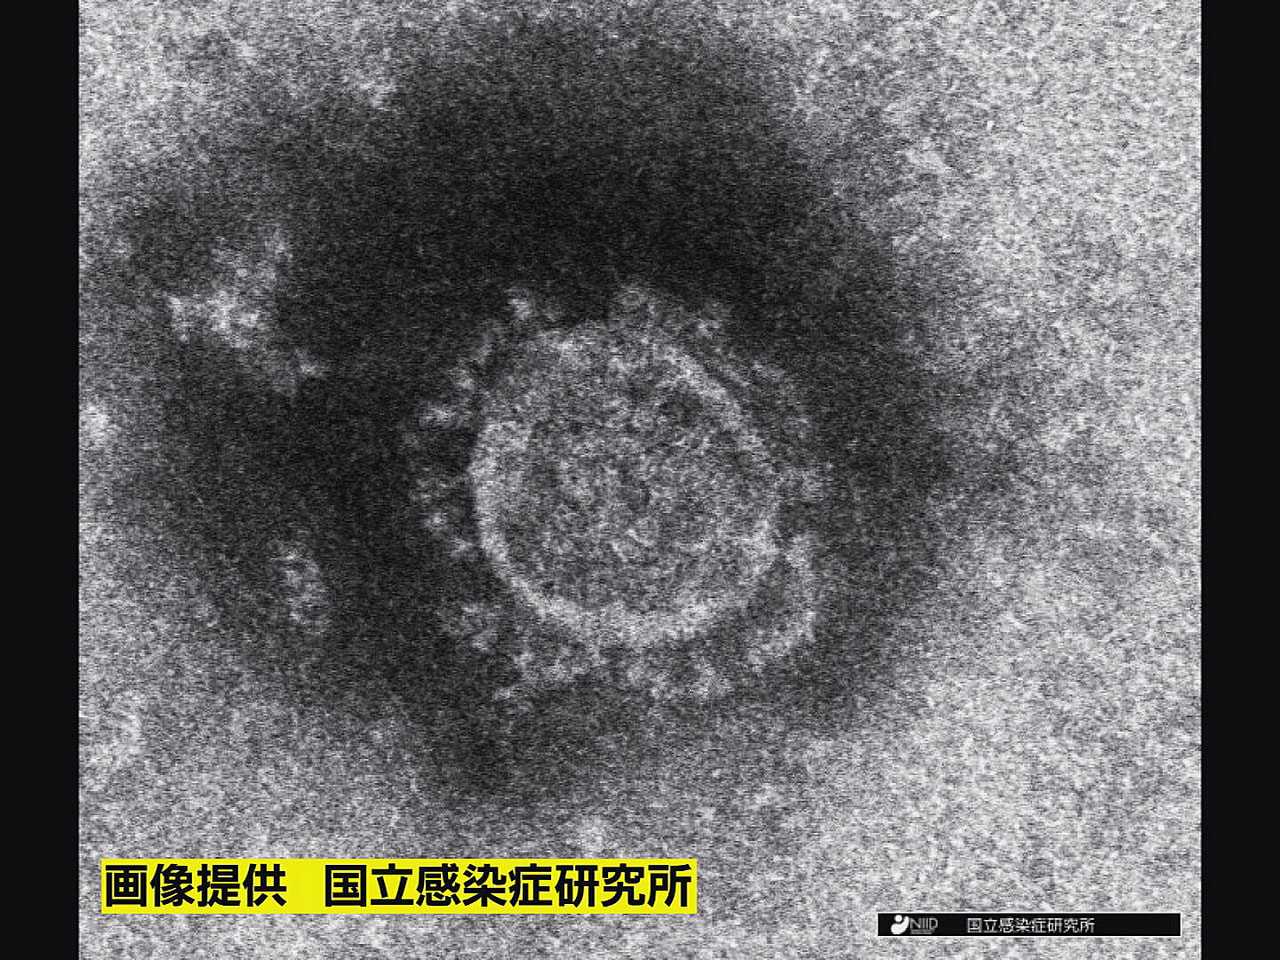 岐阜県は１２日、新型コロナウイルスの新規感染者が６２９人確認されたと発表しました...